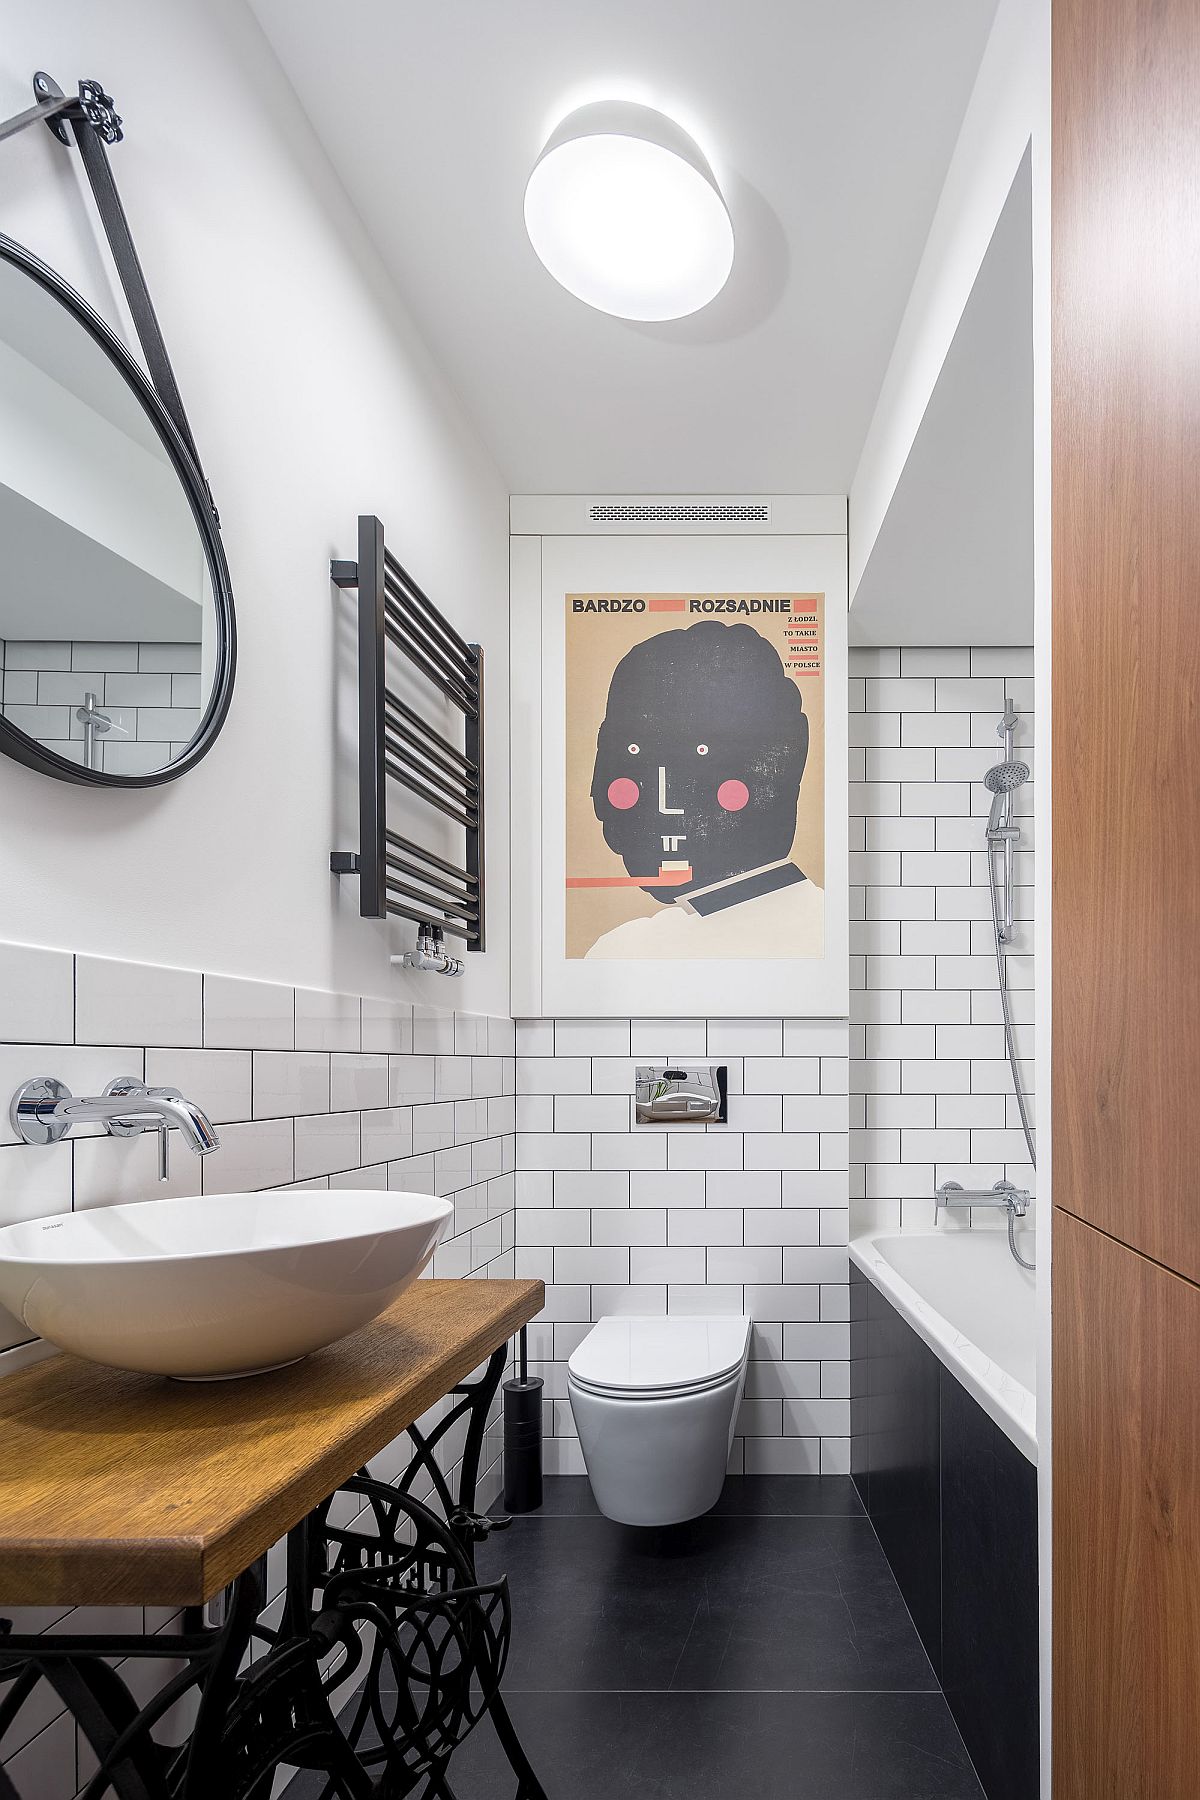 Phòng tắm với sàn nhà màu đen tương phản với nền tường trắng tạo nên chiều sâu cho không gian này. Bồn toilet cũng được lắp đặt trên tường để giải phóng diện tích mặt sàn.